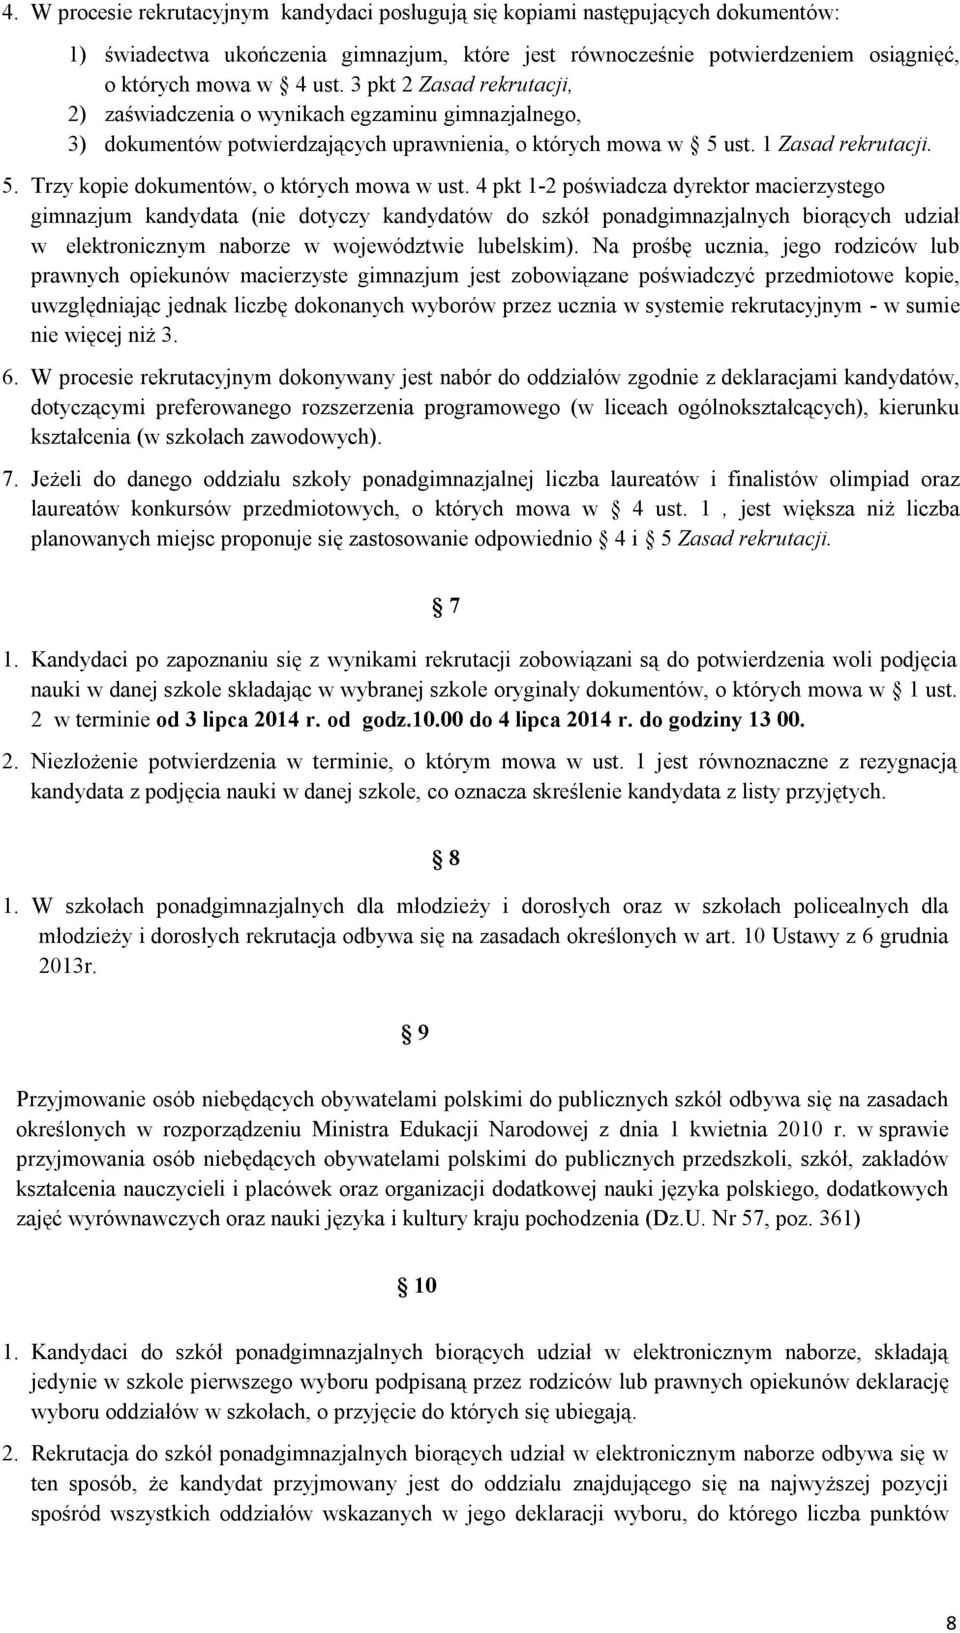 4 pkt 1-2 poświadcza dyrektor macierzystego gimnazjum kandydata (nie dotyczy kandydatów do szkół ponadgimnazjalnych biorących udział w elektronicznym naborze w województwie lubelskim).